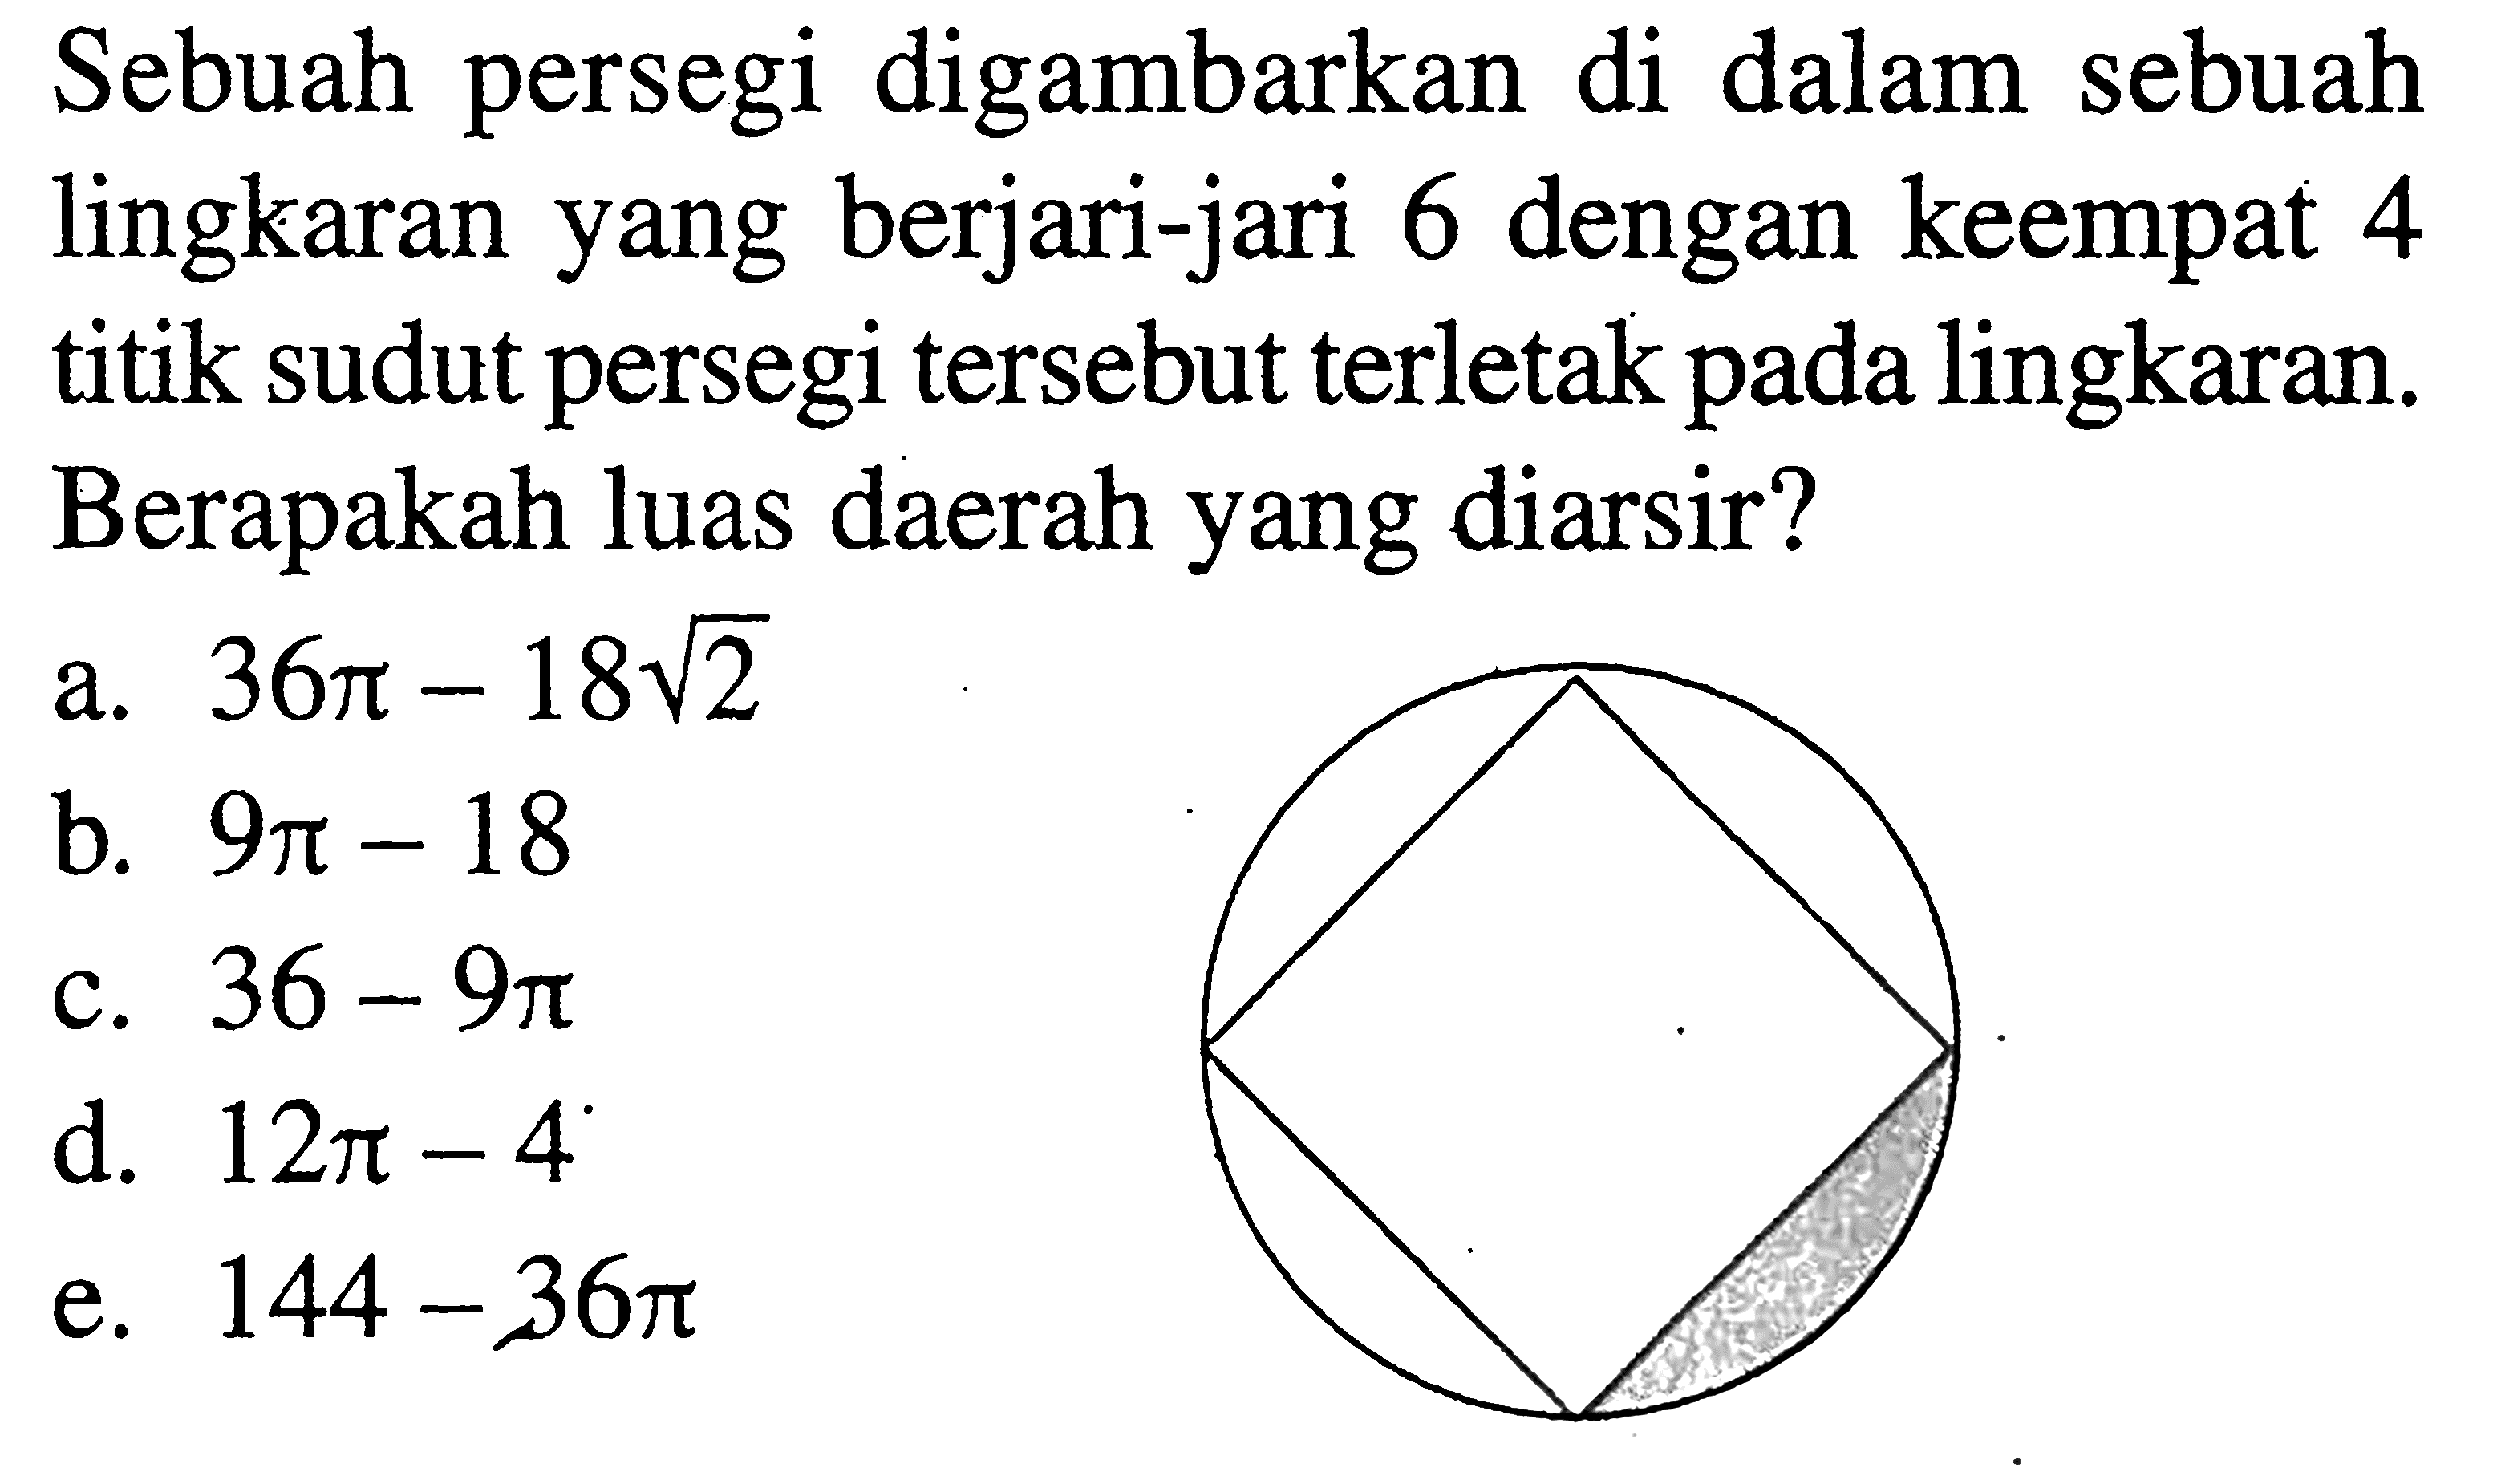 Sebuah persegi digambarkan di dalam sebuah lingkaran yang berjari-jari 6 dengan keempat 4 titik sudut persegi tersebut terletak pada lingkaran. Berapakah luas daerah yang diarsir?